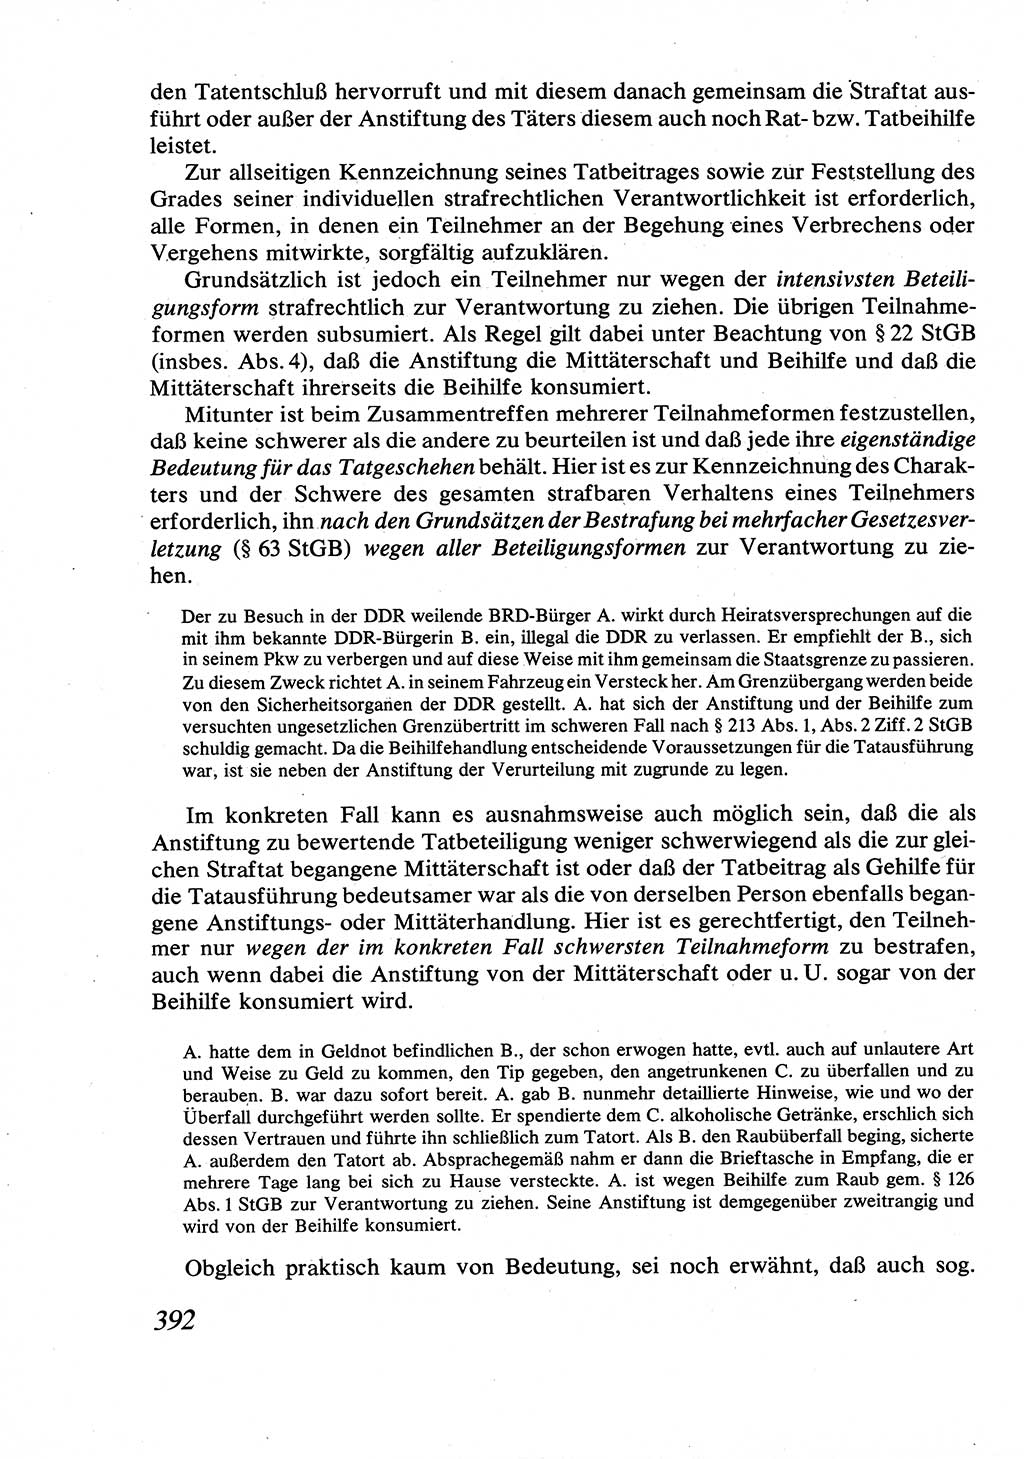 Strafrecht [Deutsche Demokratische Republik (DDR)], Allgemeiner Teil, Lehrbuch 1976, Seite 392 (Strafr. DDR AT Lb. 1976, S. 392)